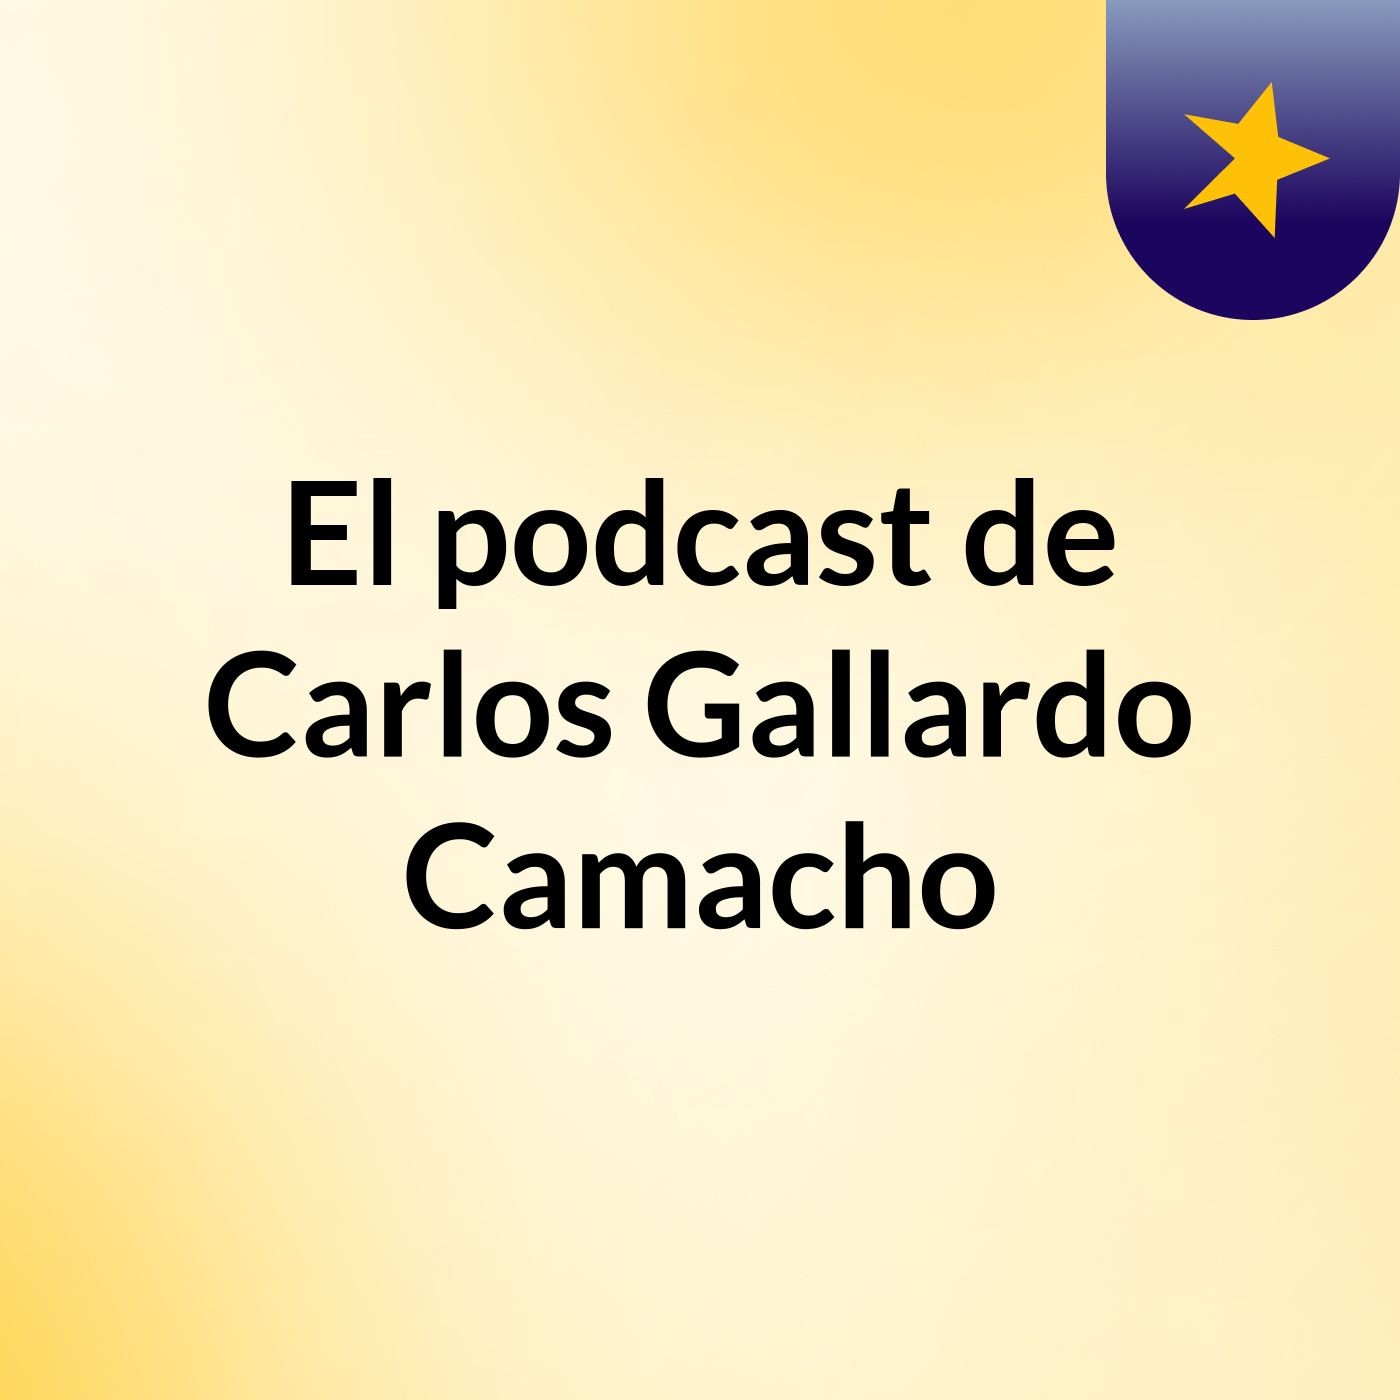 Episodio 2 - El podcast de Carlos Gallardo Camacho